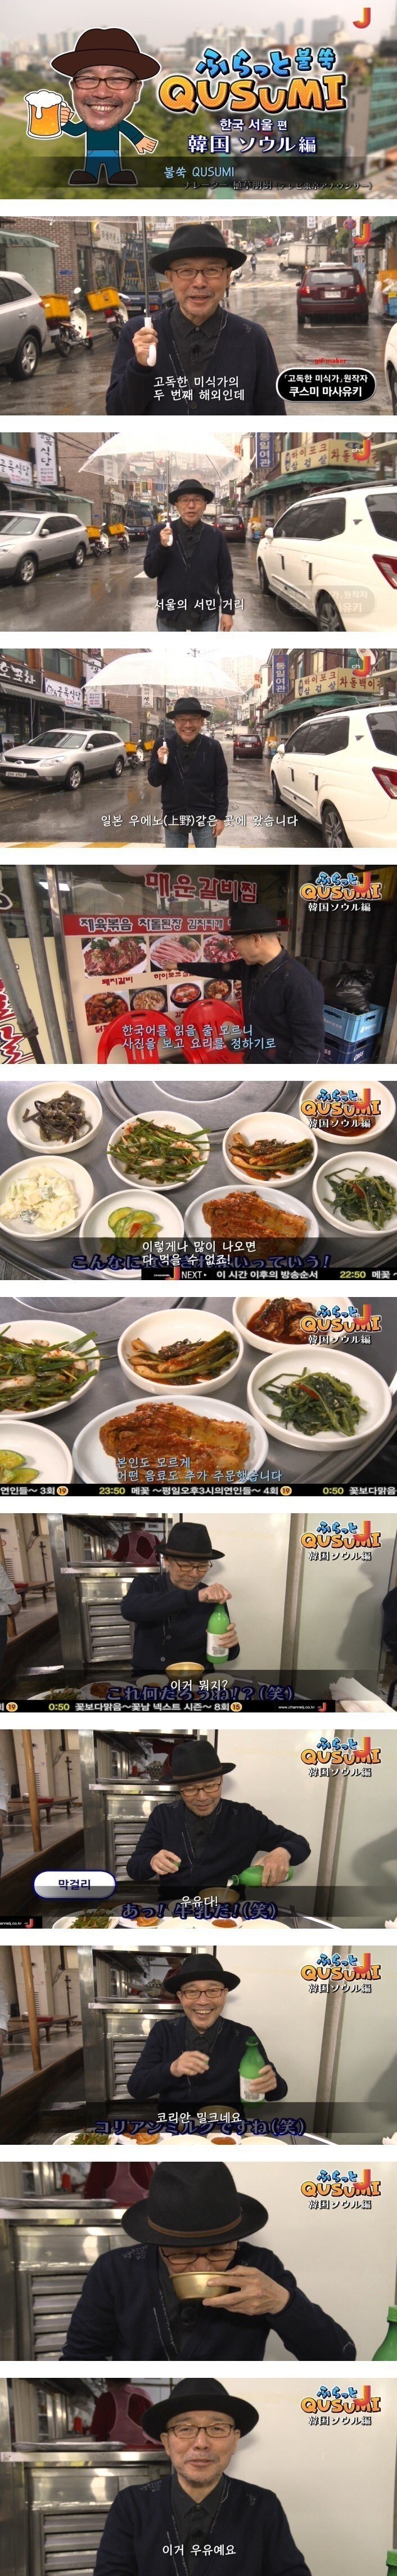 16 한국식당은 밥먹을 때 우유를 같이 먹네요.jpg